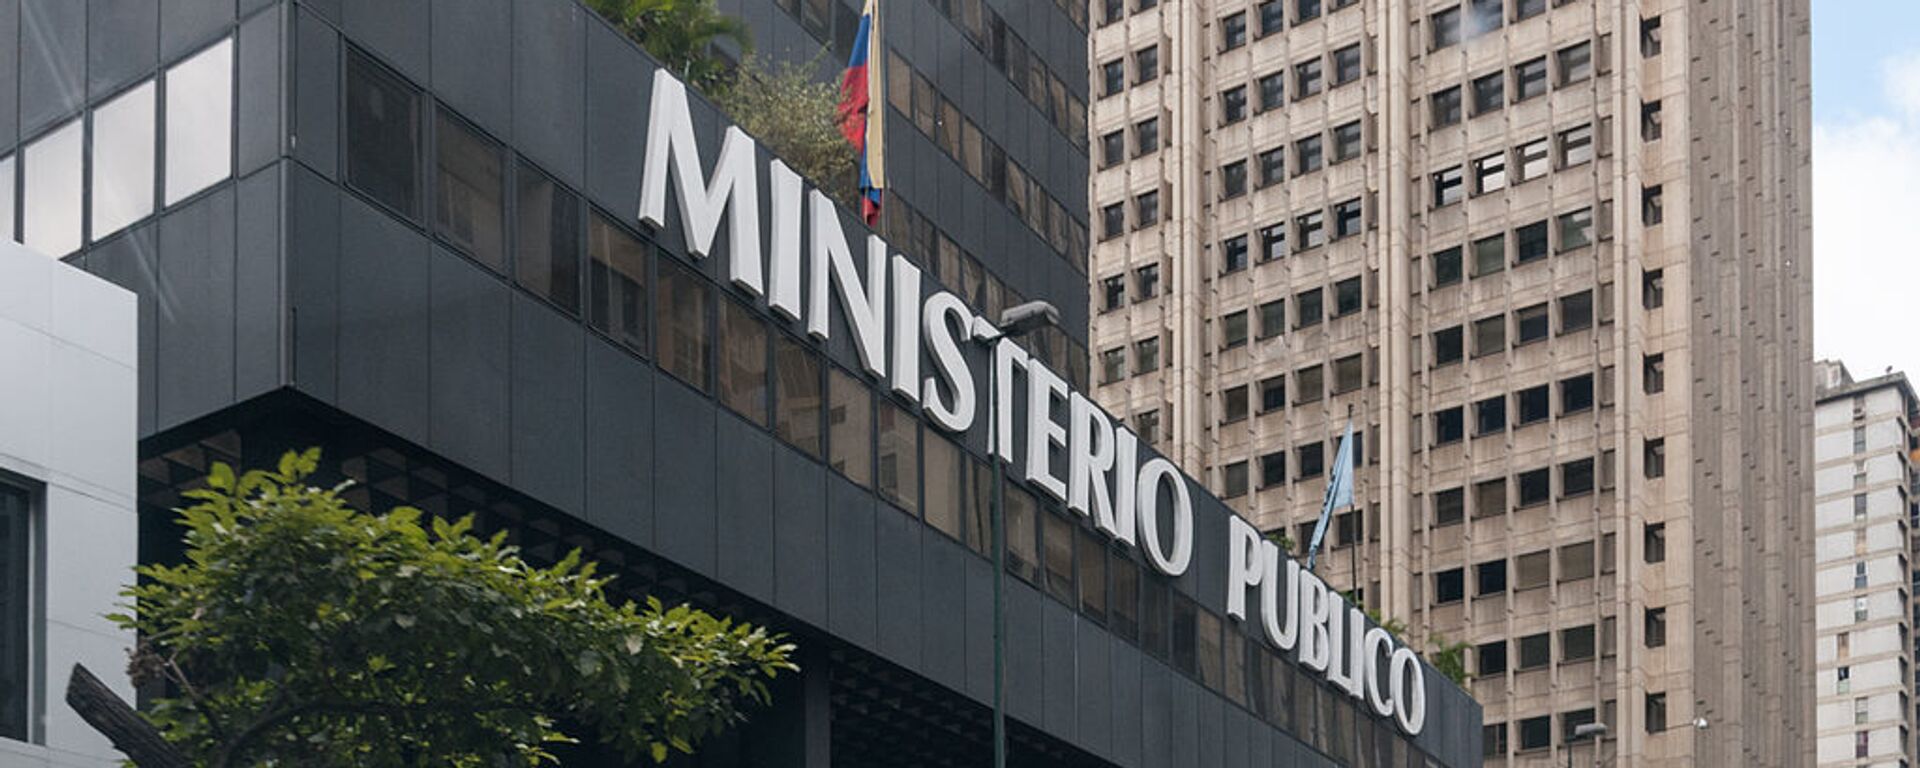 Ministerio Público (Fiscalía) de Venezuela - Sputnik Mundo, 1920, 17.11.2021